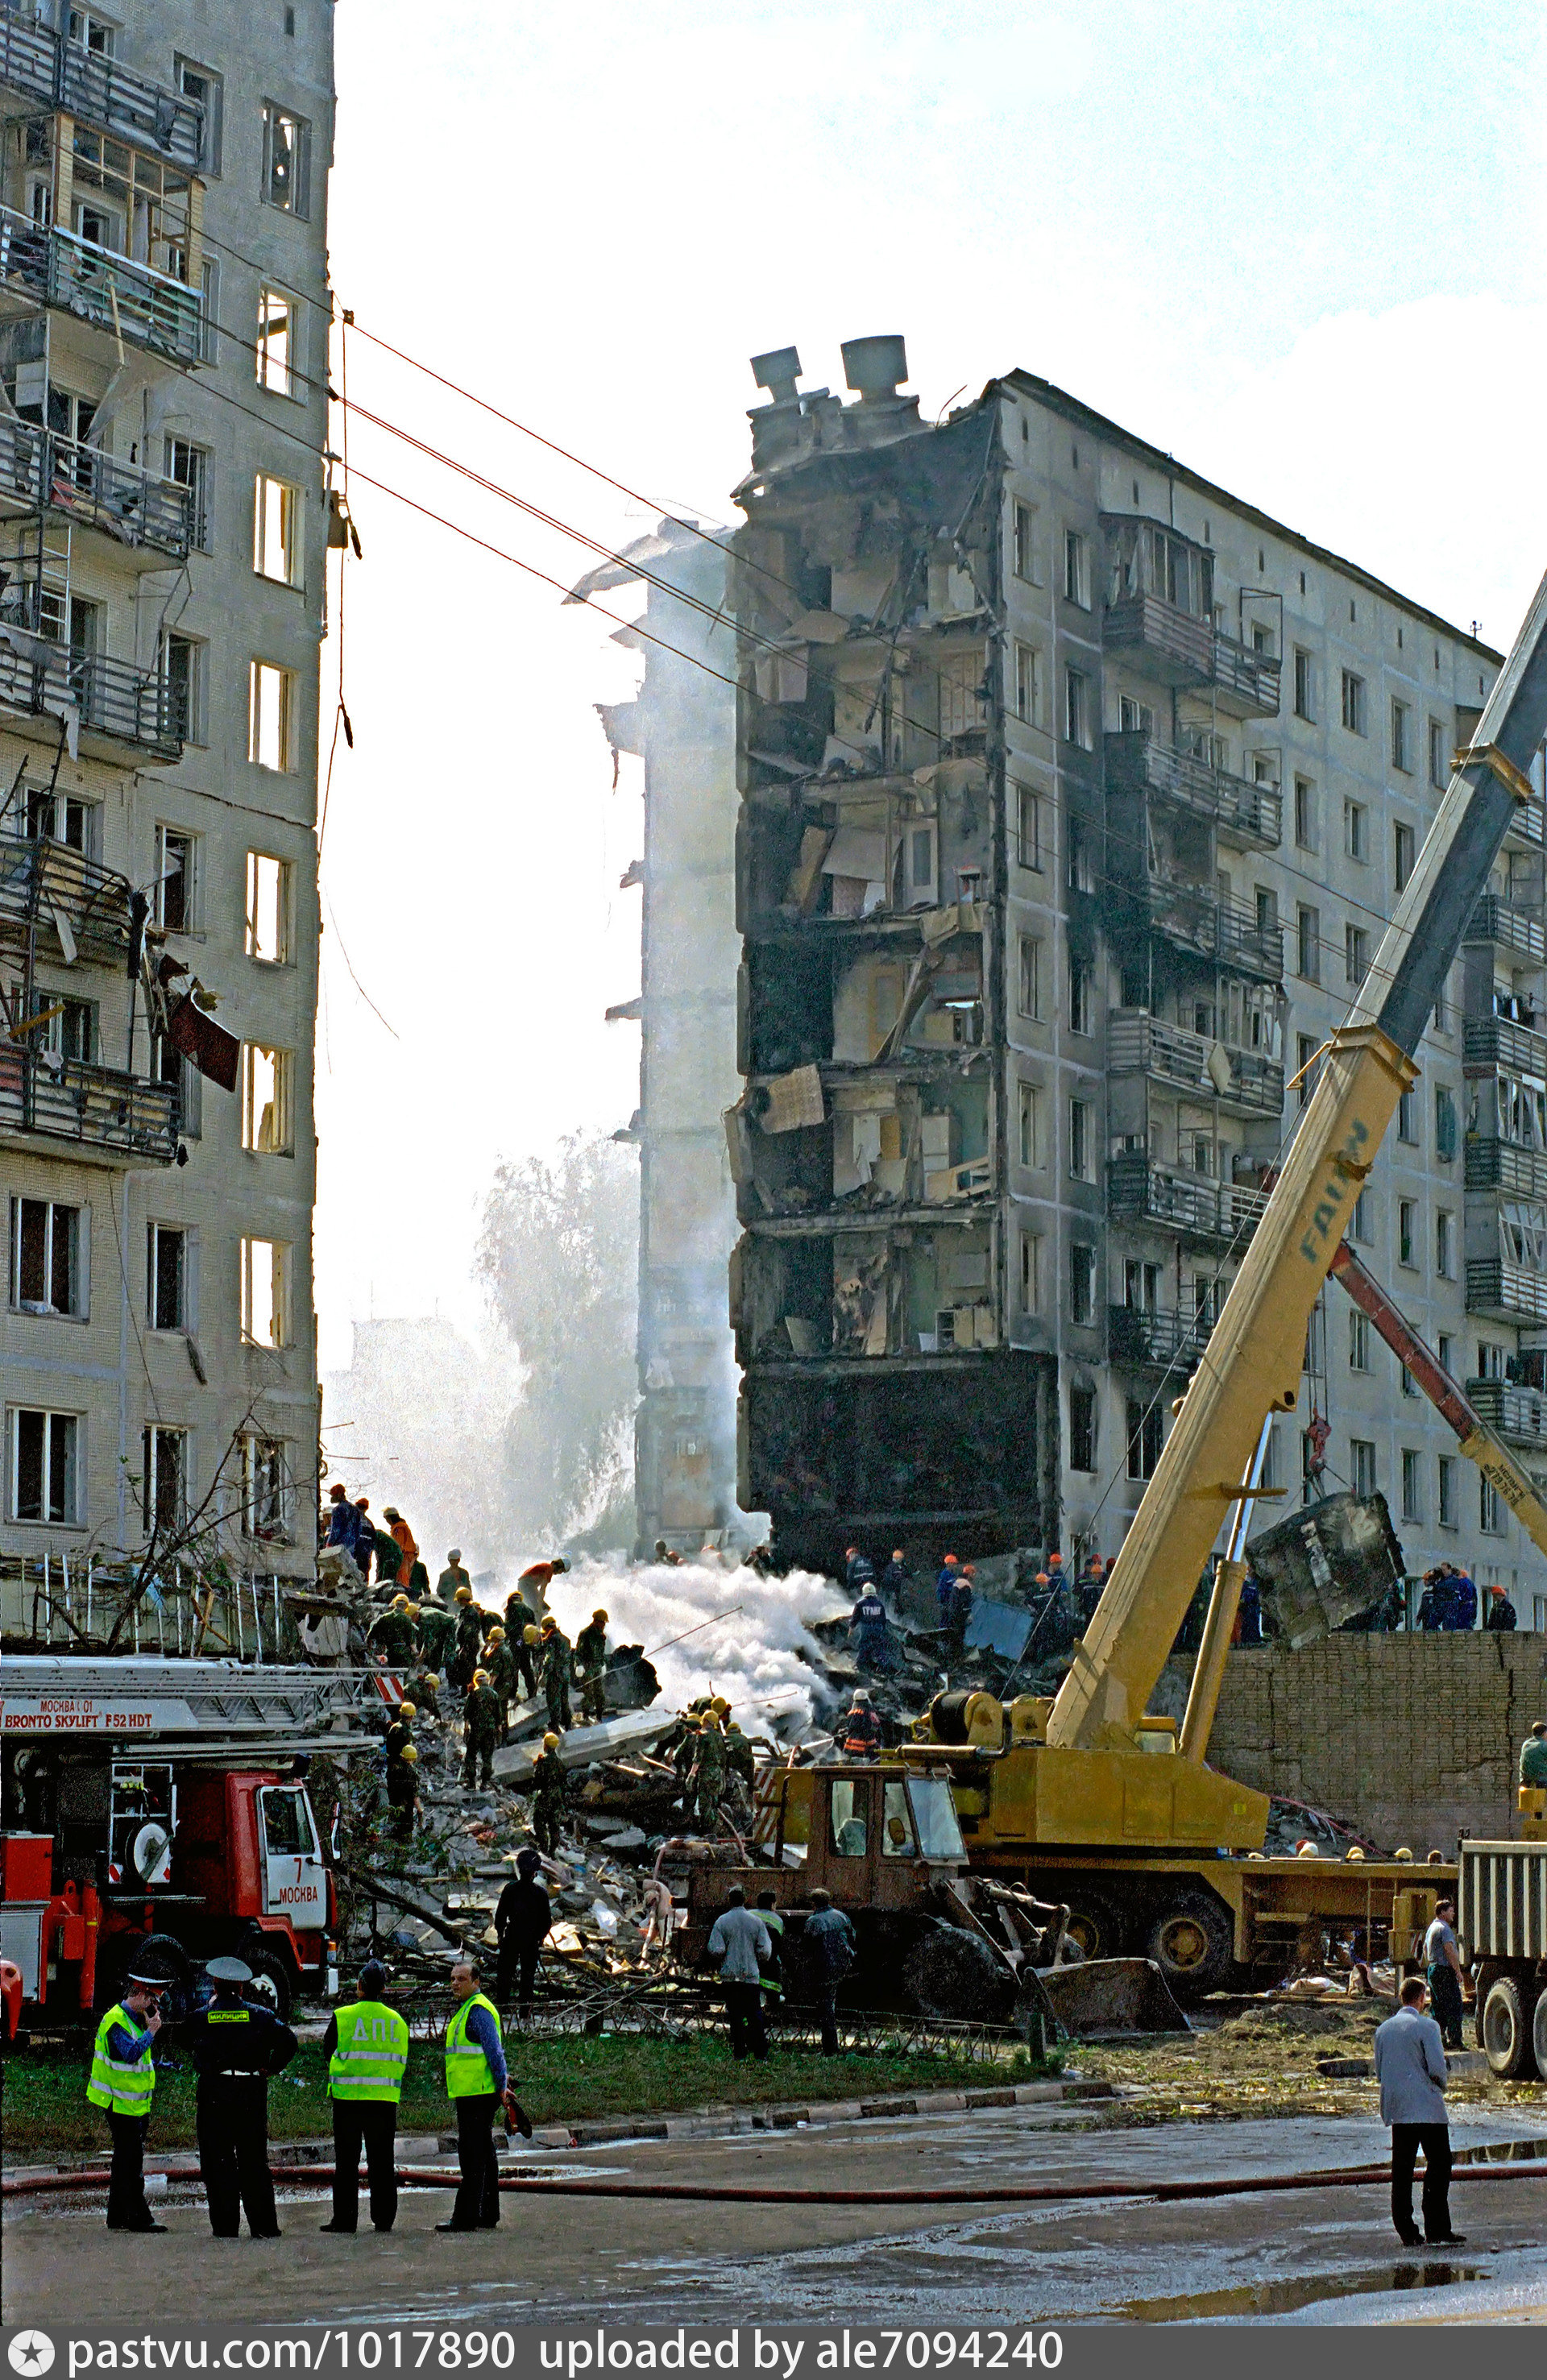 Какие дома взорвали в москве. Москва улица Гурьянова 1999. Взрыв дома на улице Гурьянова 1999. Теракт на улице Гурьянова 1999 в Москве.